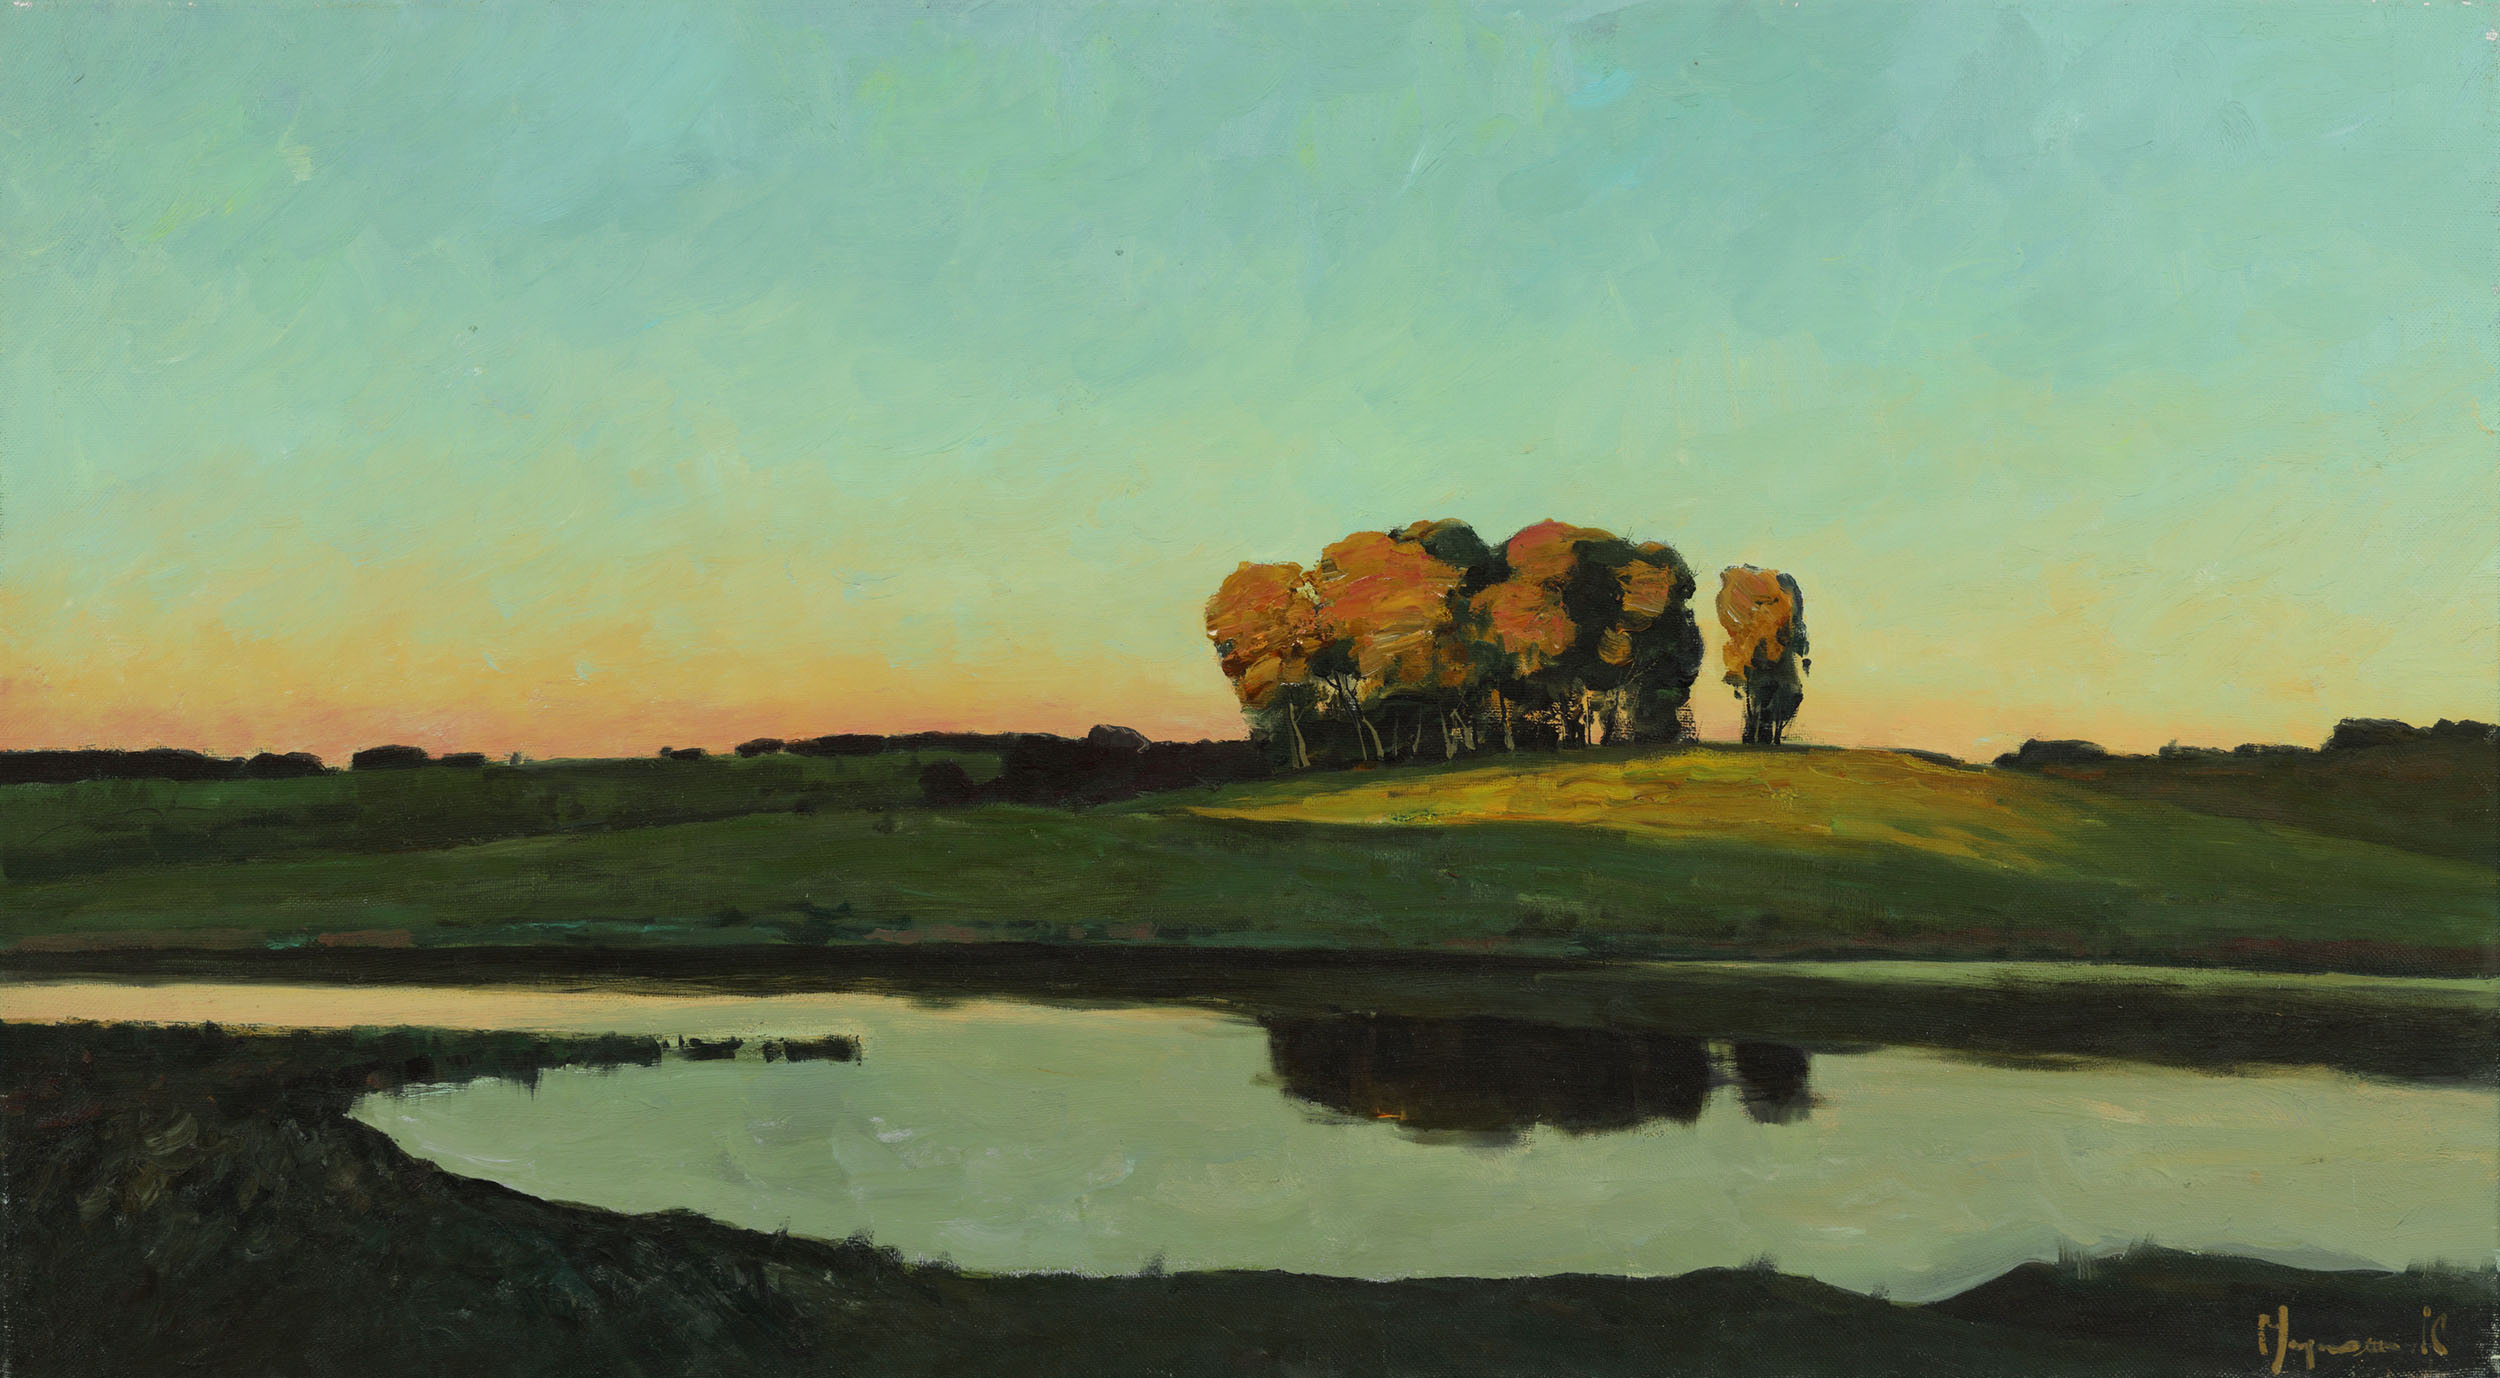 Sunset - 1, Stas Miroshnikov, Buy the painting Oil